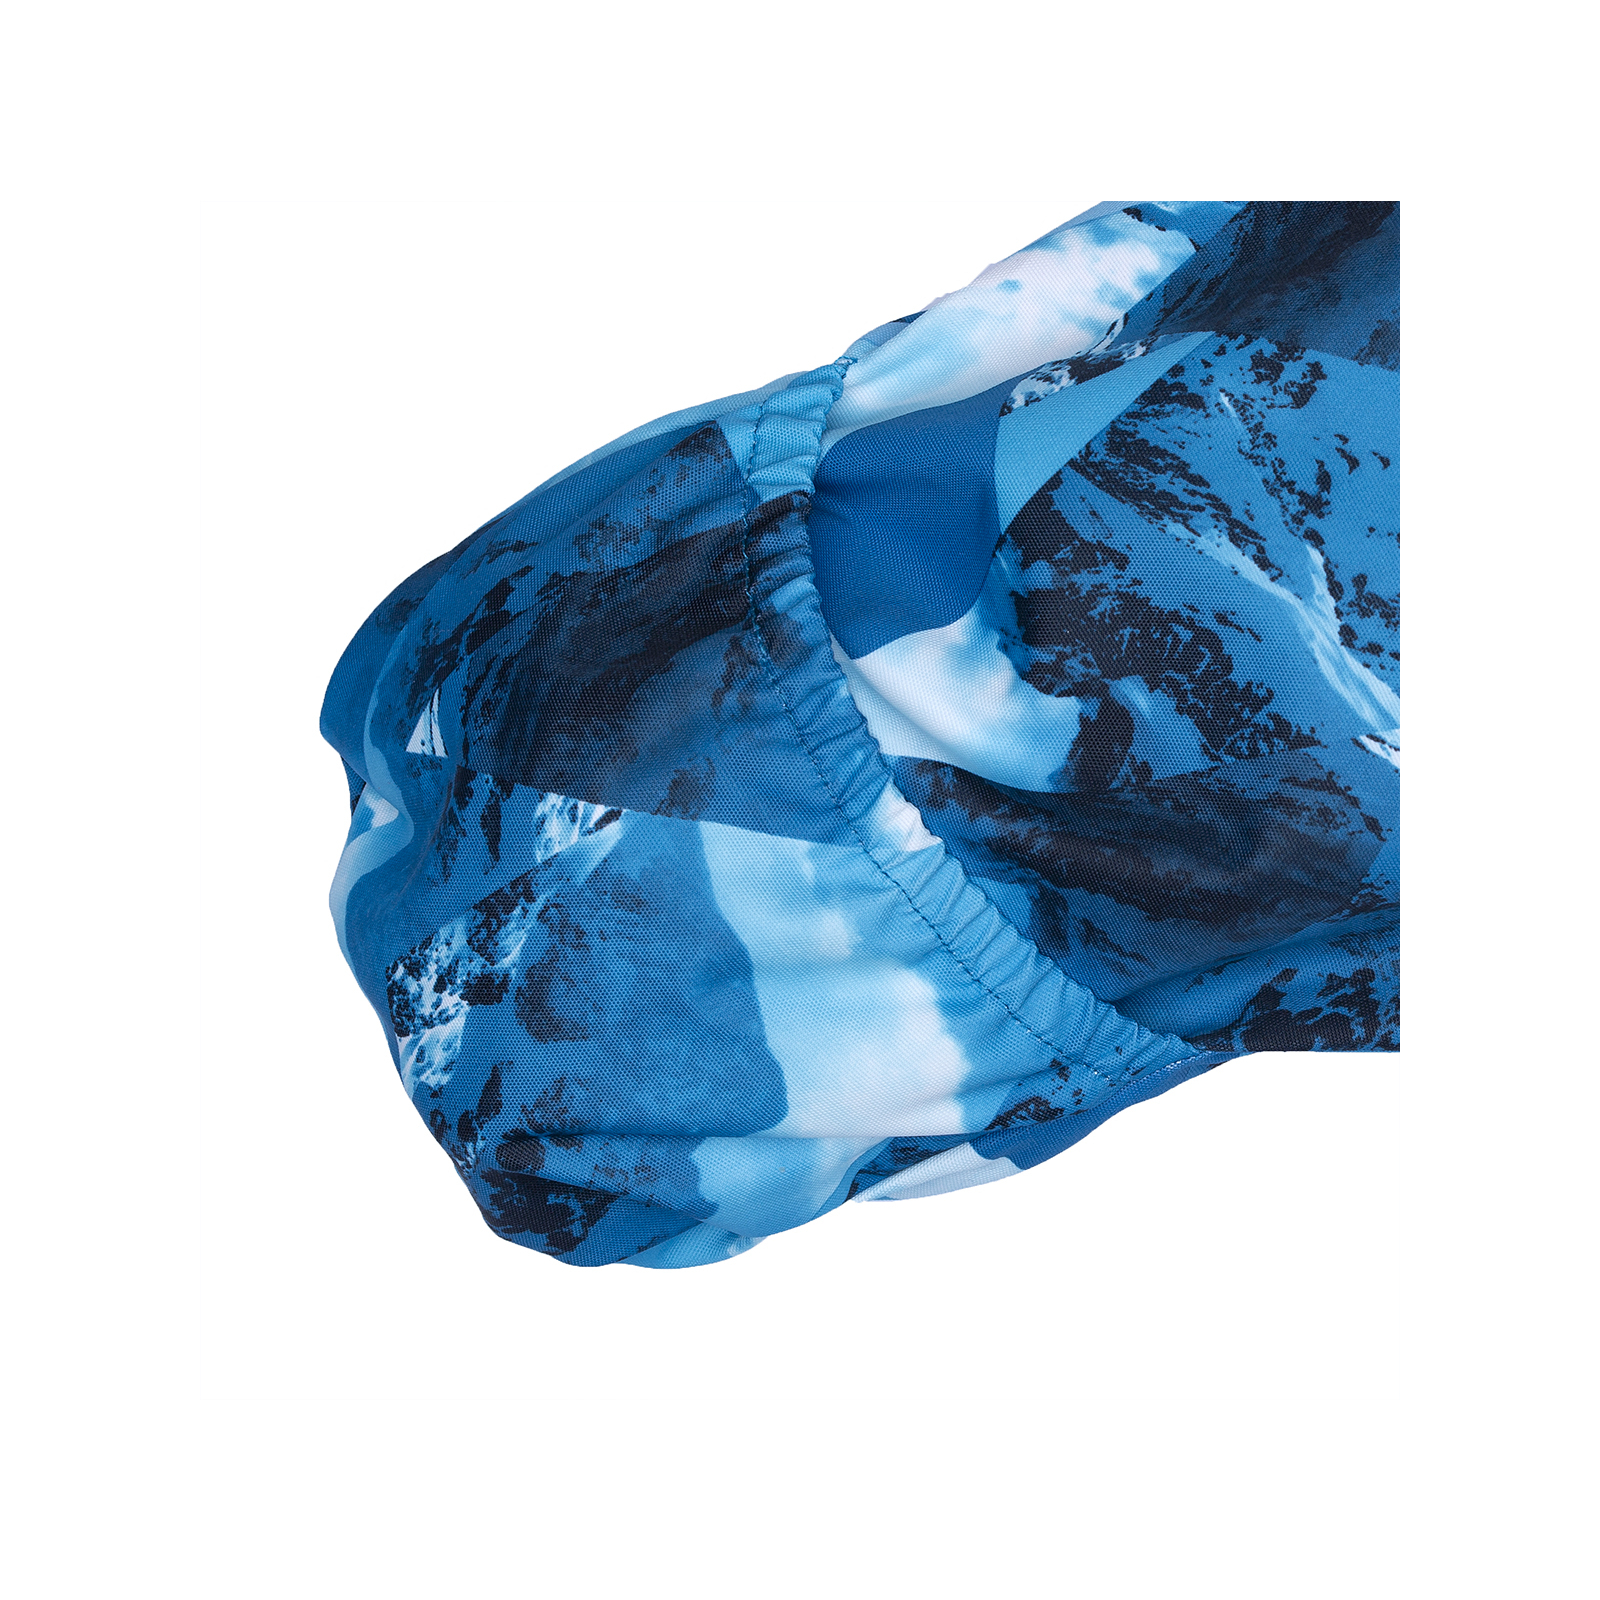 Комбинезон Huppa REGGIE 1 36020130 синий с принтом 74 (4741468538938) изображение 7